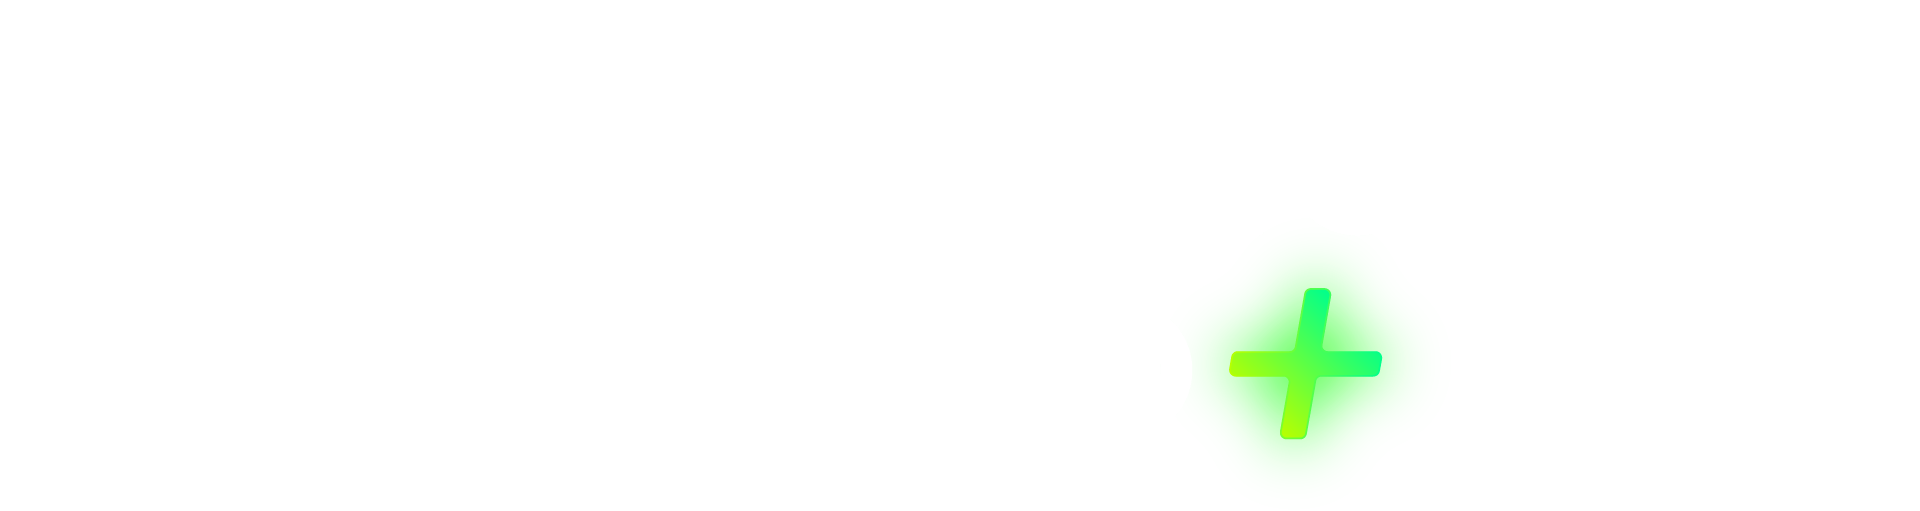 Knowledge Coop+